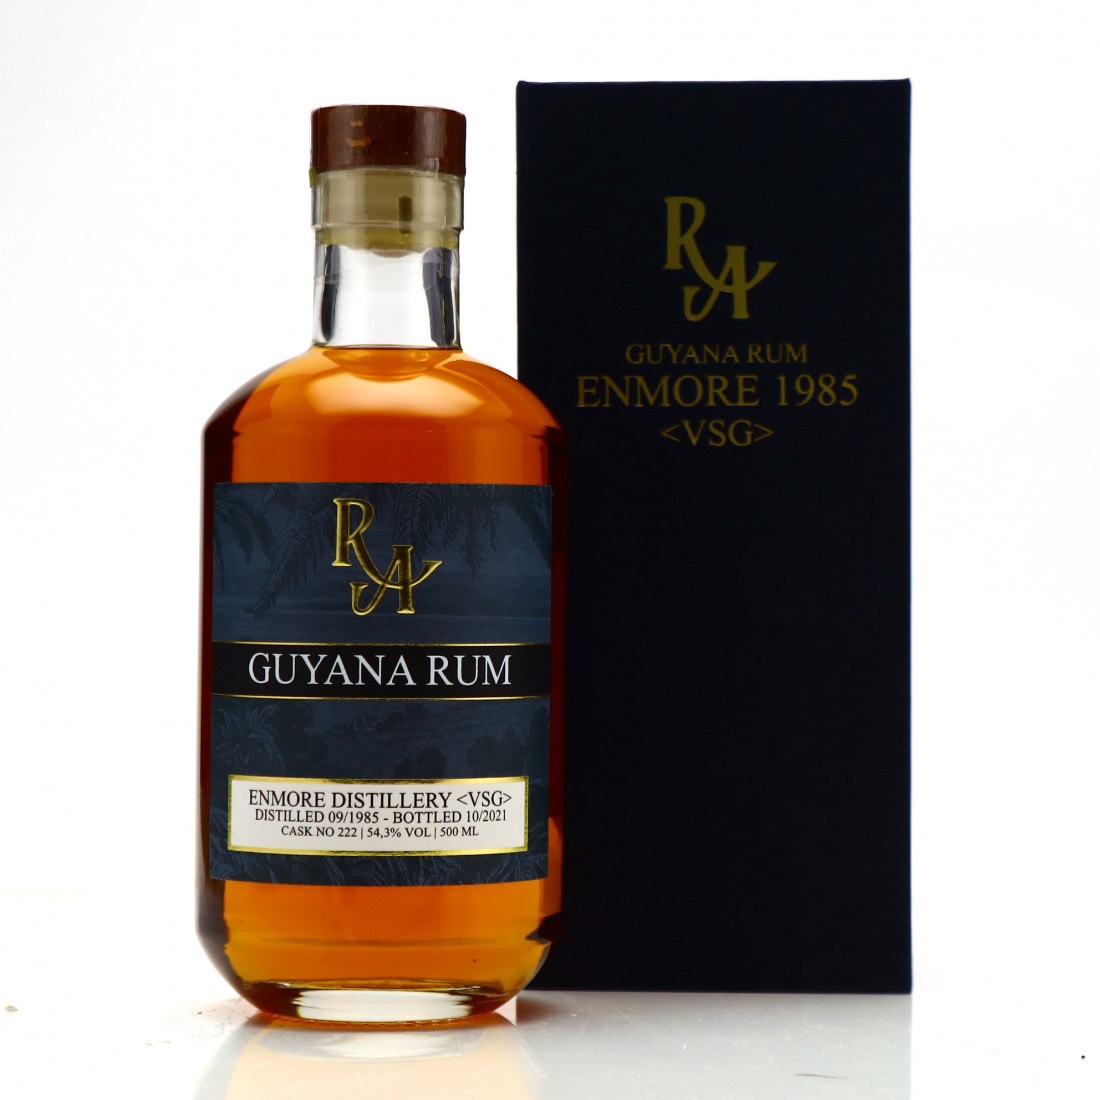 Bottle image of Rum Artesanal Guyana Rum VSG